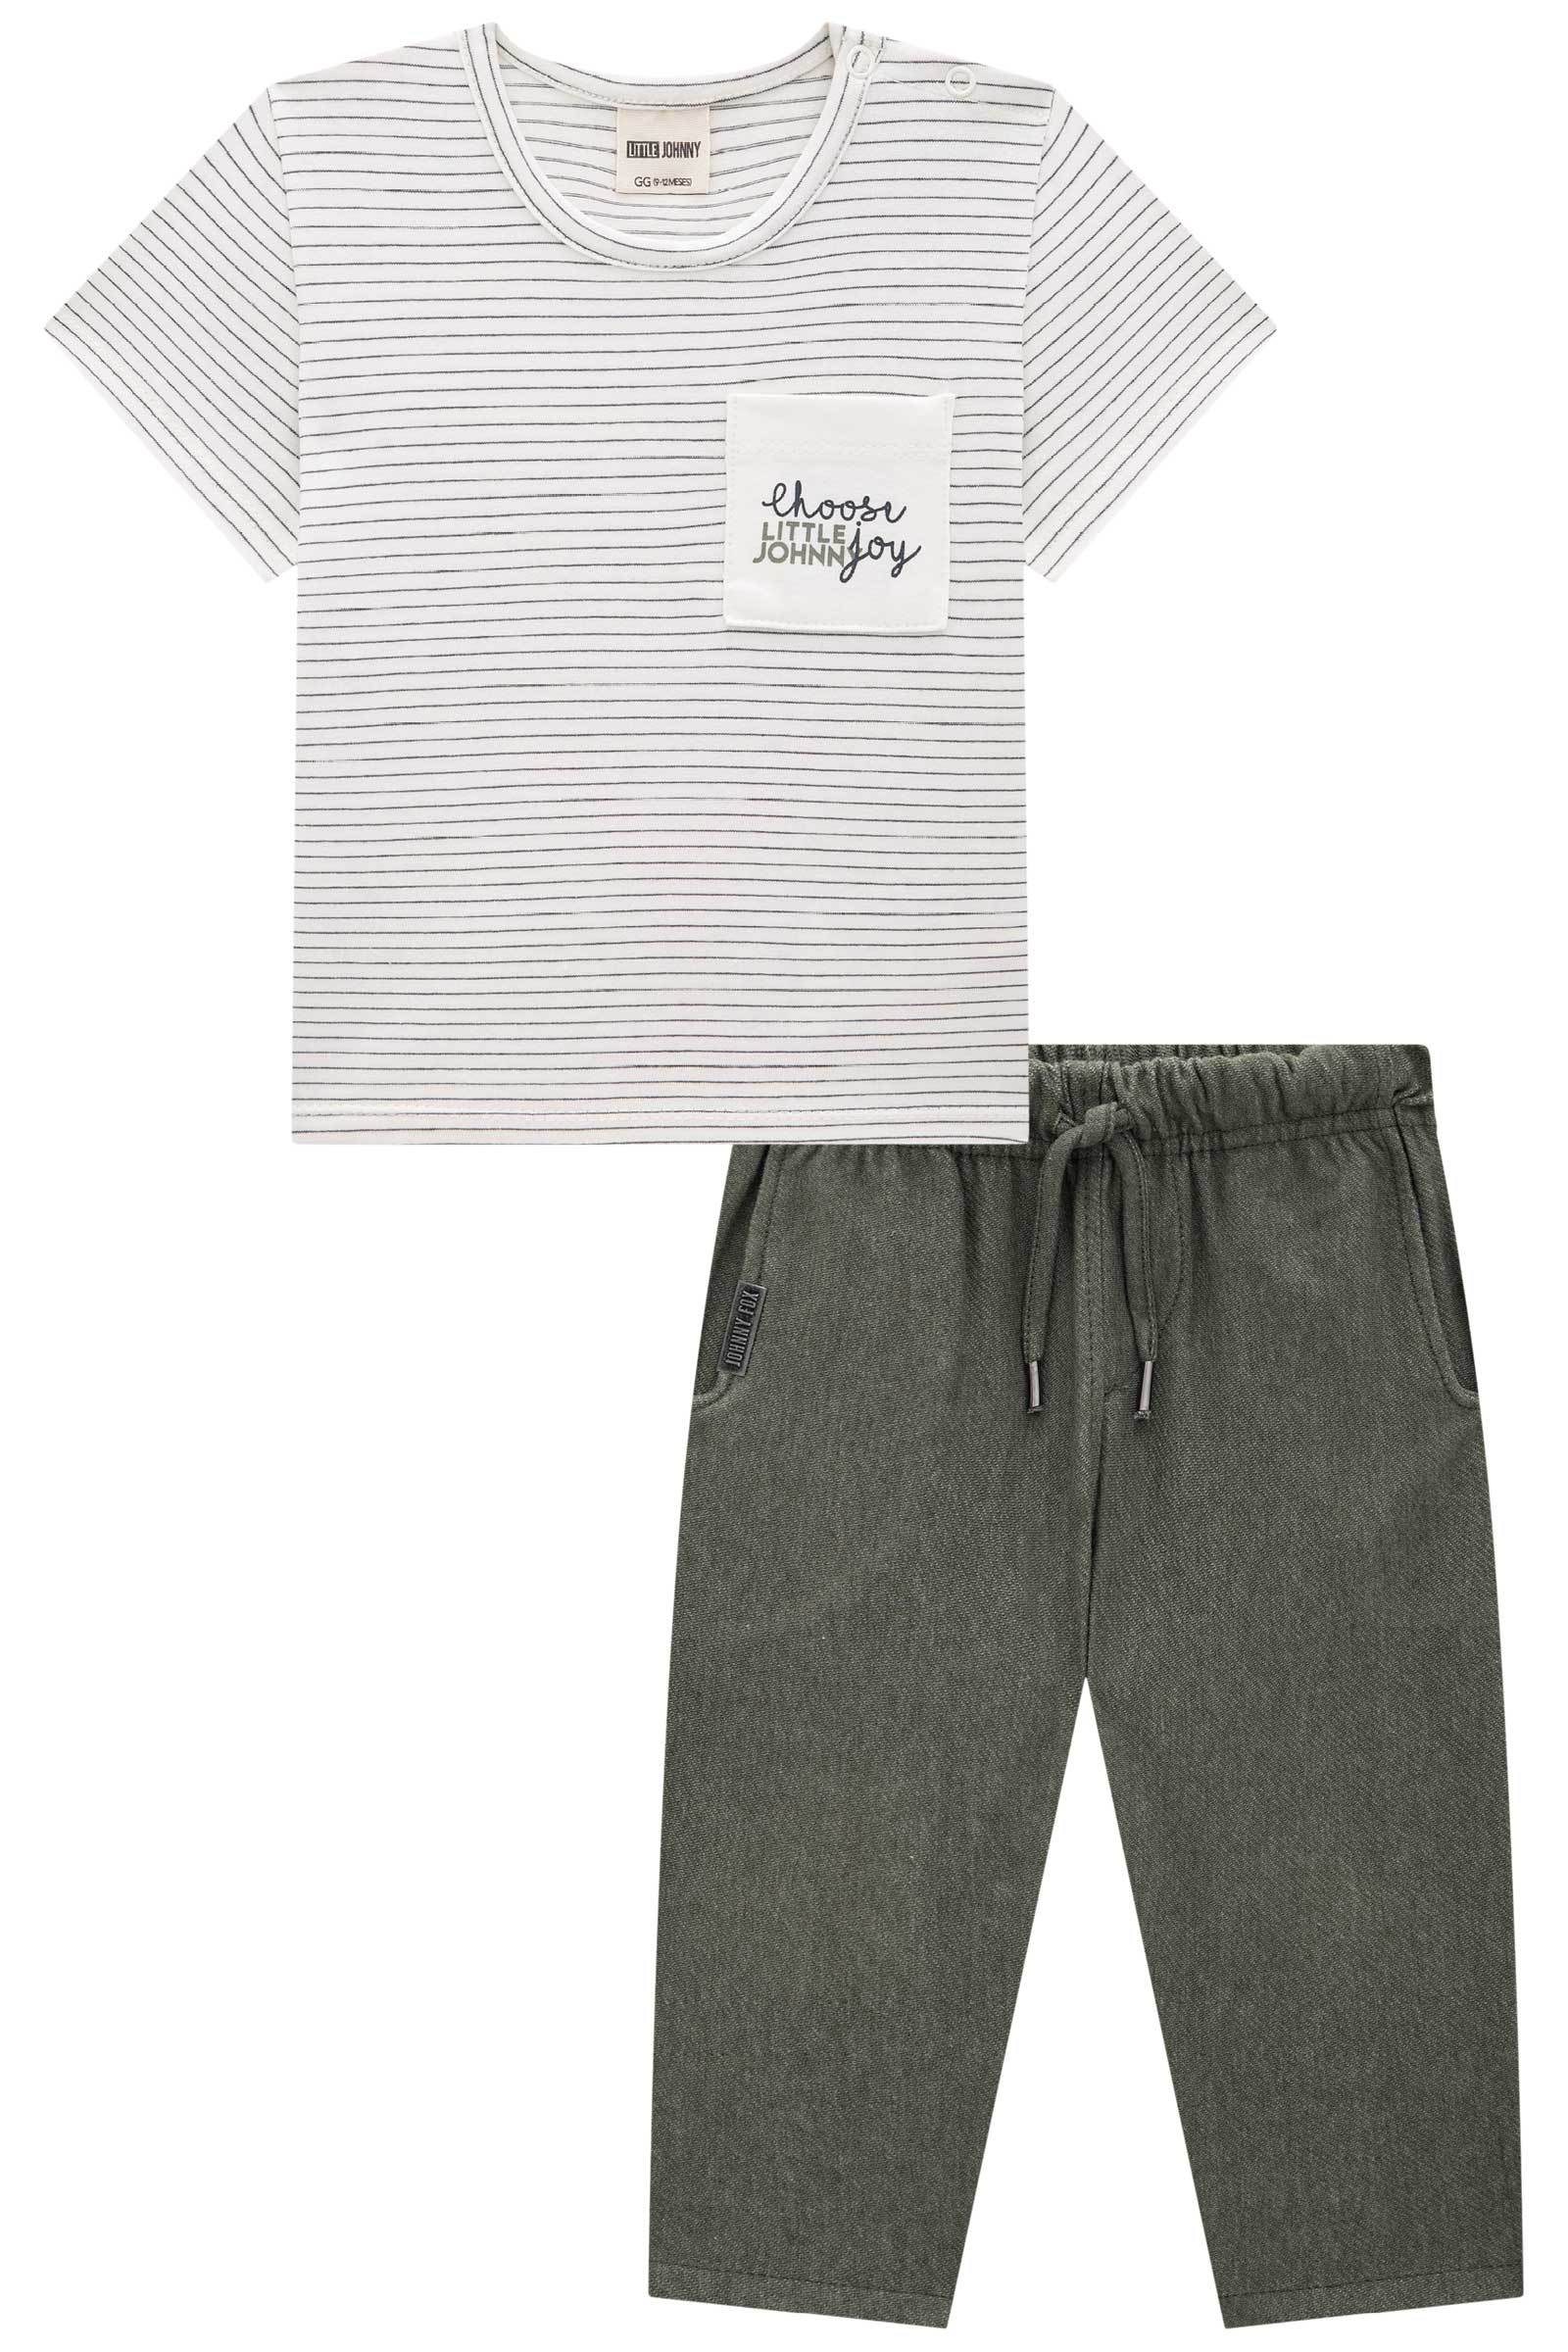 Cj de Camiseta em Cotton Listrado Fio Tinto e Calça Sikinny Comfort em Cotton Jeans C/ Elas 74577 Johnny Fox